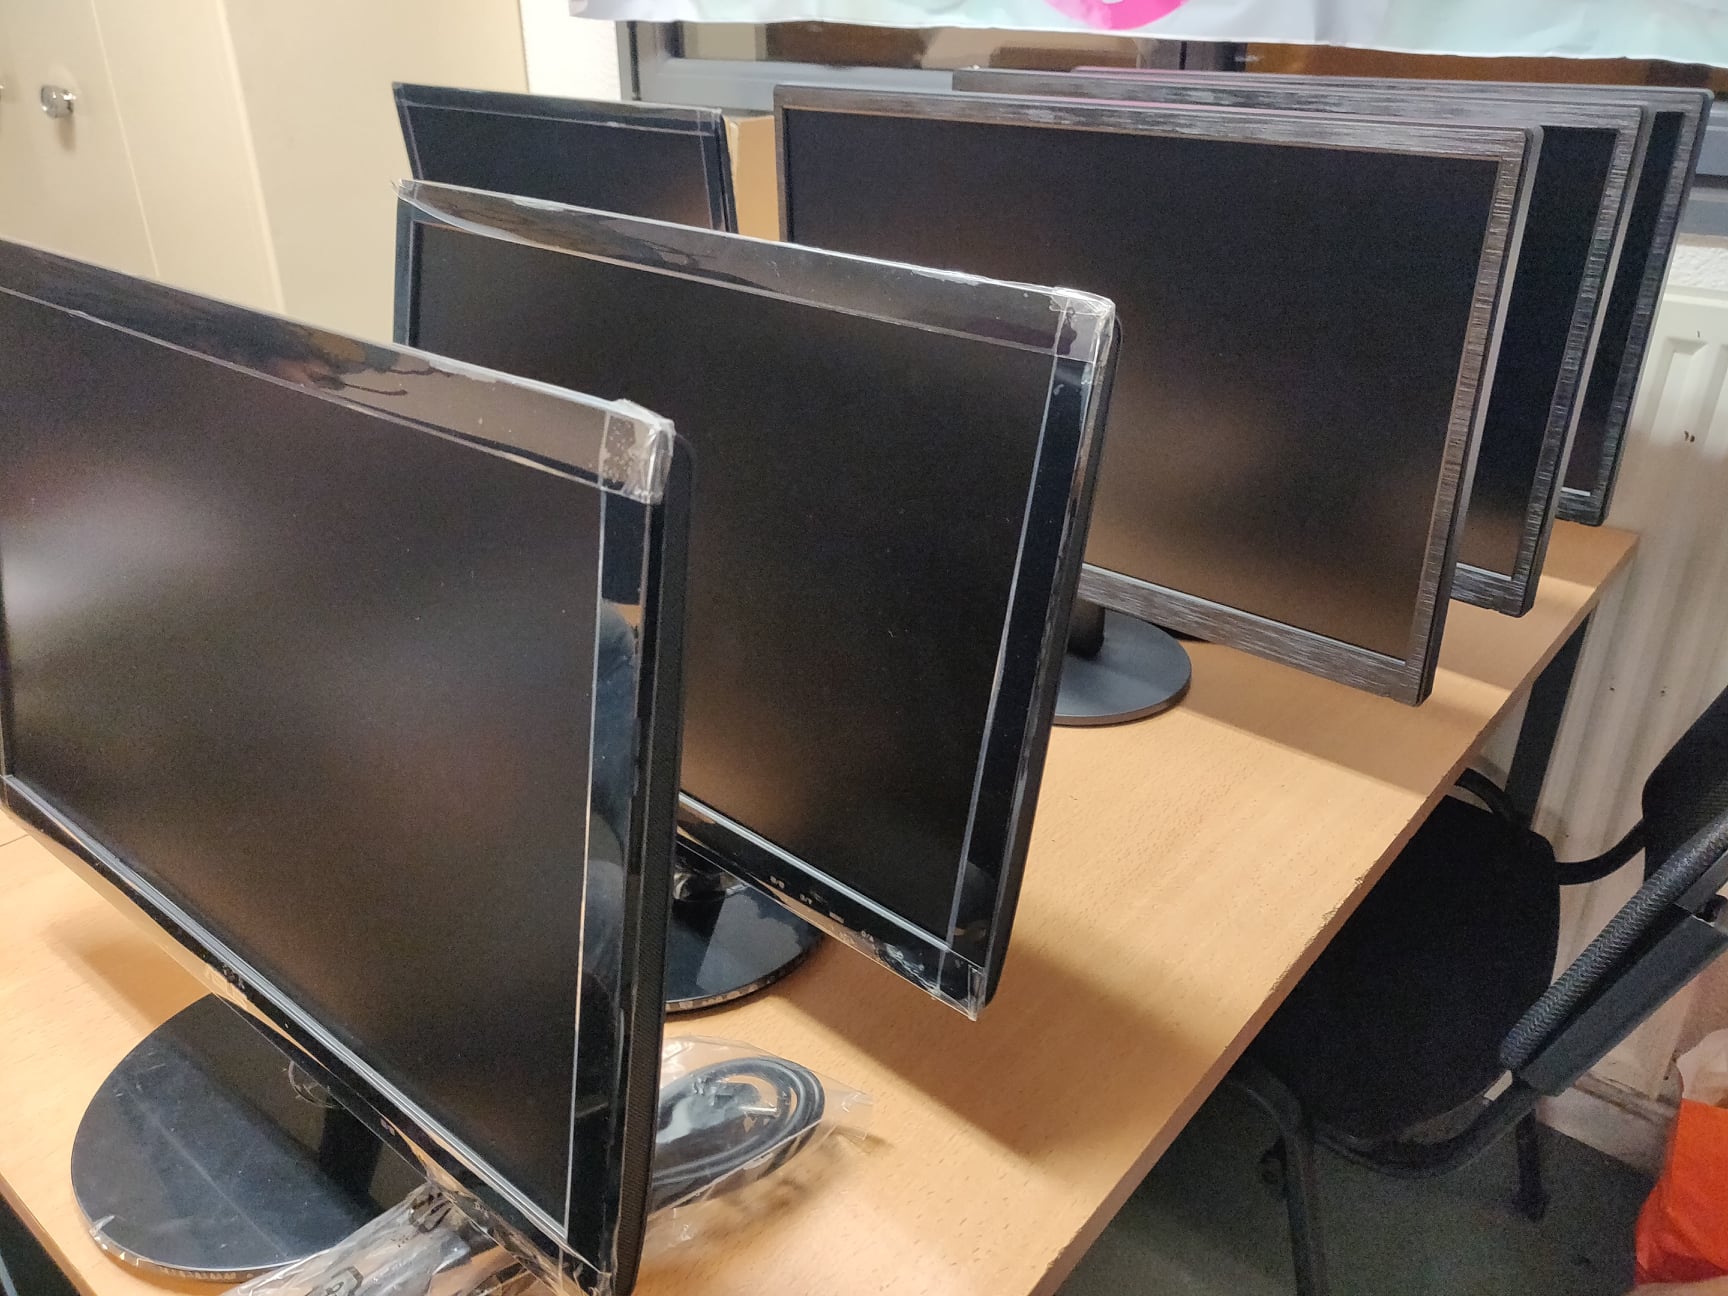 Le matériel informatique peut être réservé par les étudiants pour suivre au mieux le cours à distance